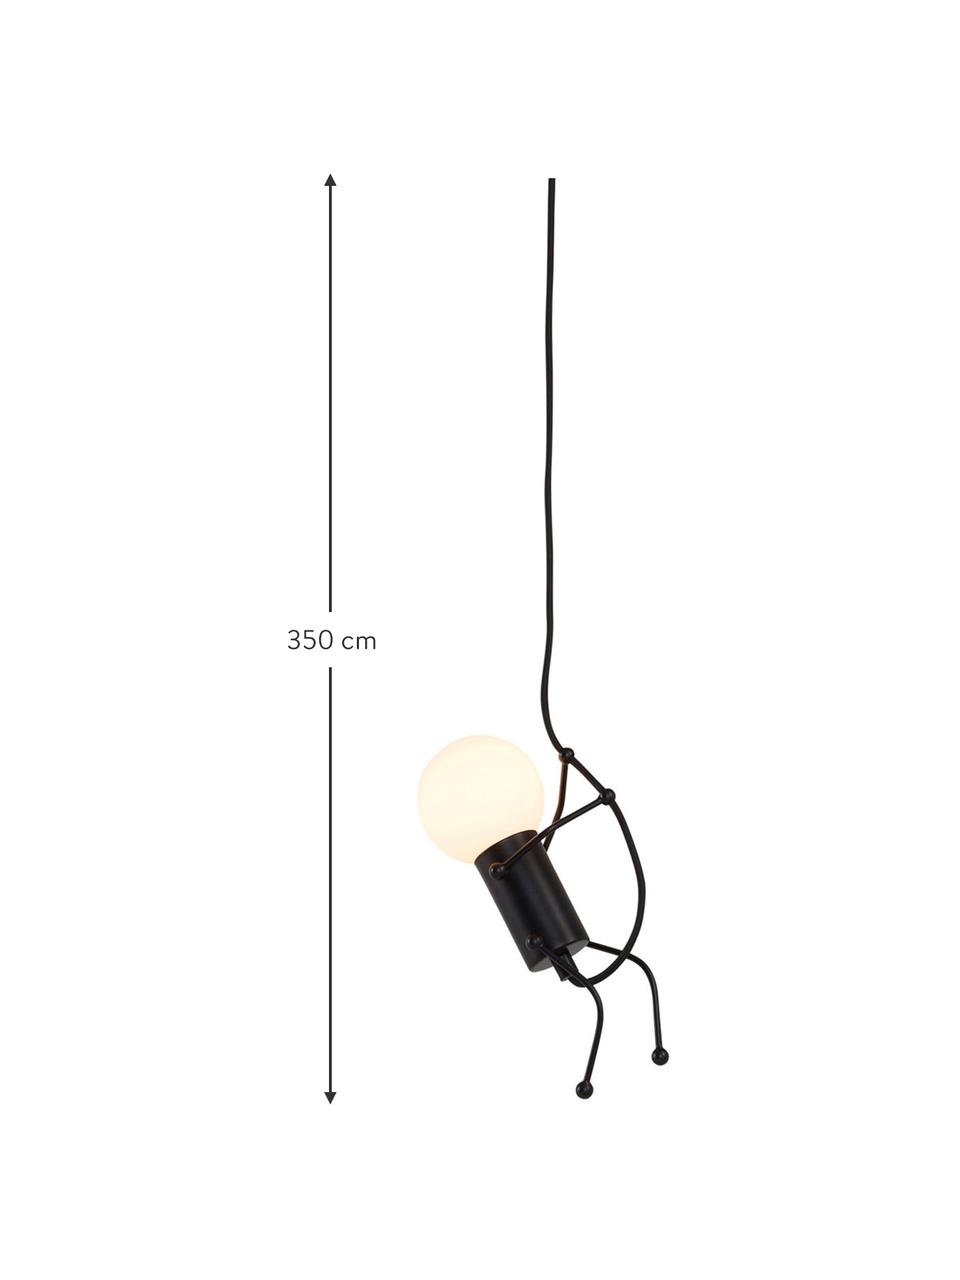 Hanglamp Gubbe, Zwart, B 8 x L 350 cm